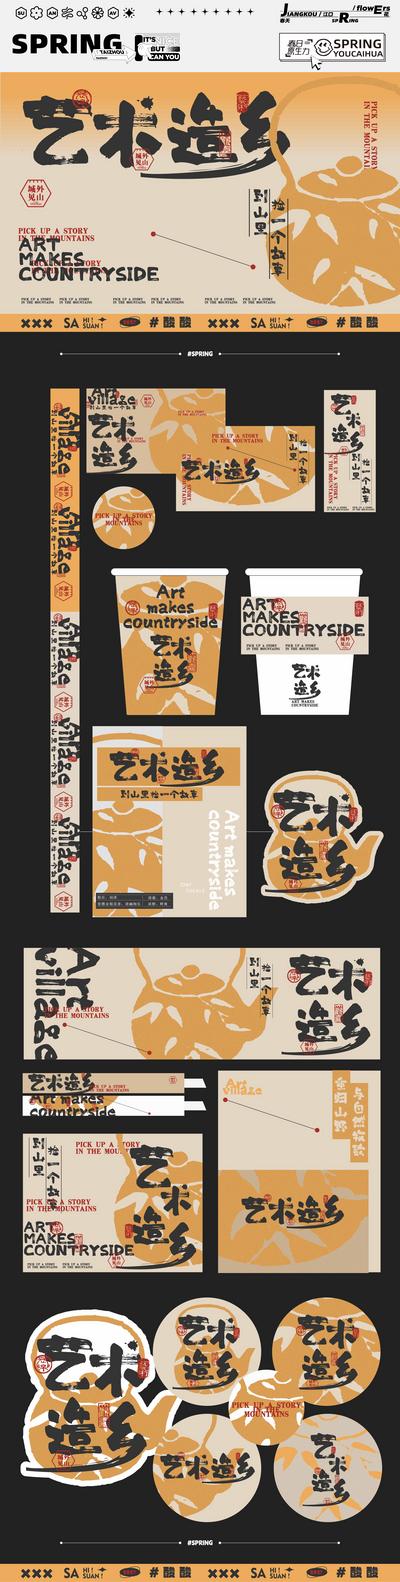 南门网 物料 延展 生活节 艺术节 茶室 茶饮 中国风 非遗 文化 手提袋 饮品 中式 系列